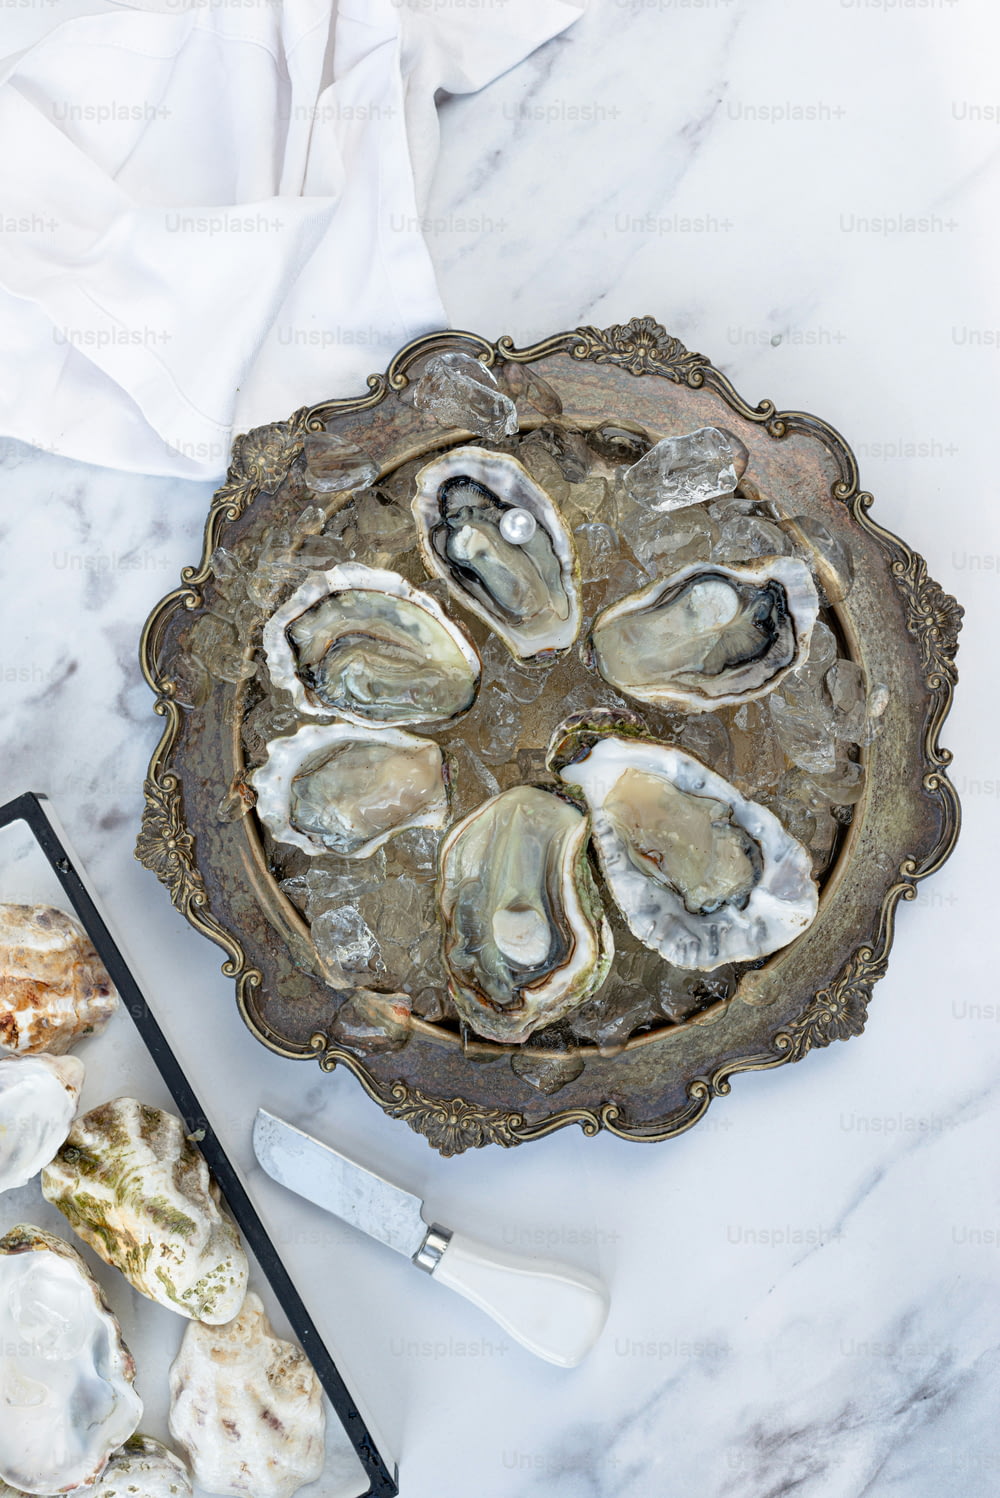 大理石のテーブルに盛られた牡蠣の盛り合わせ